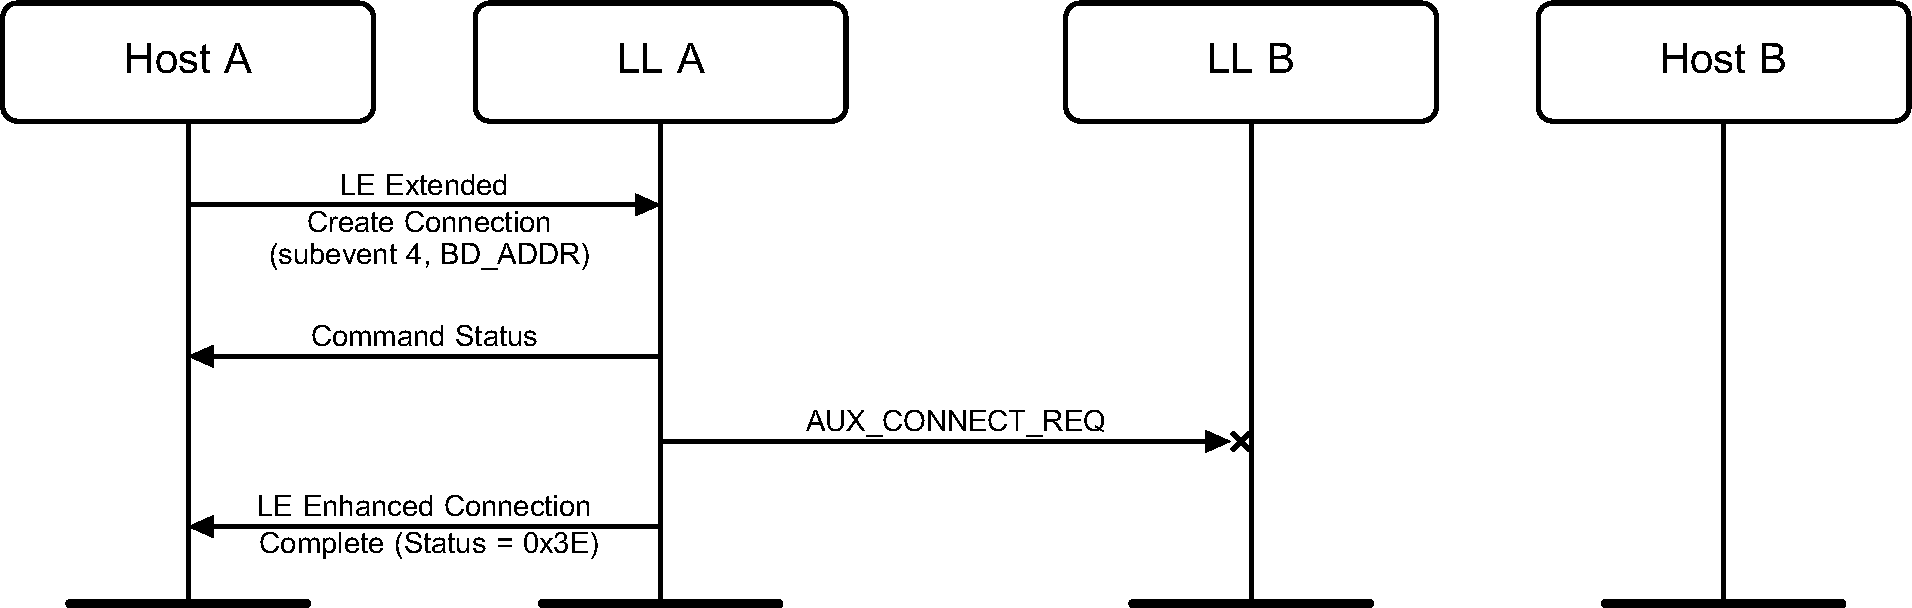 Synchronized device misses the AUX_CONNECT_REQ PDU